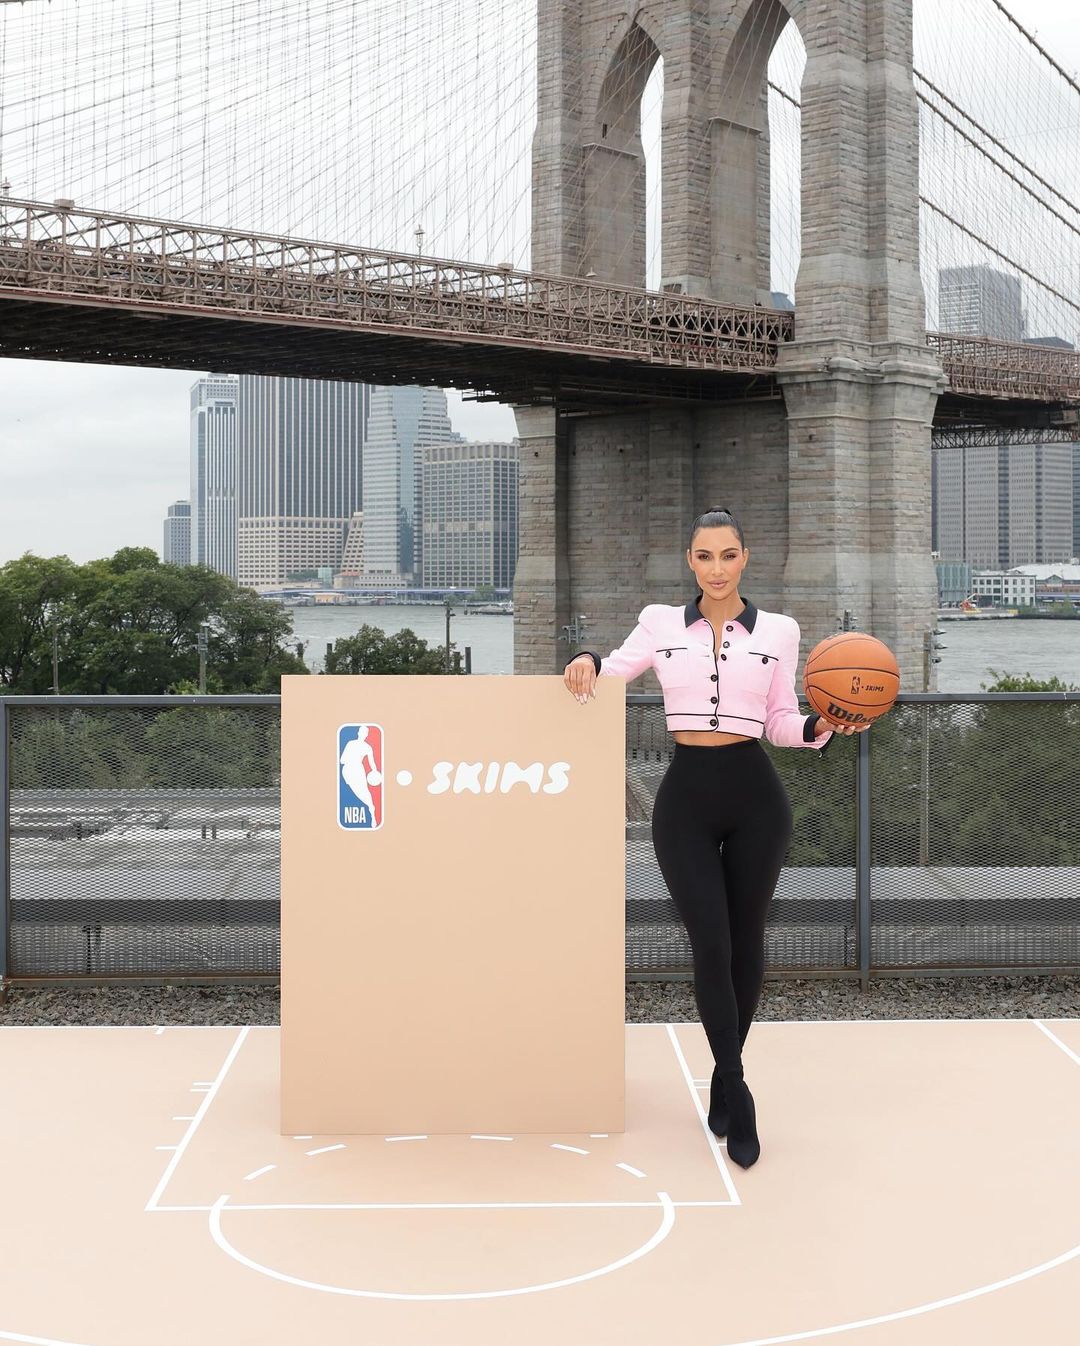 Το Skims της Kim Kardashian γίνεται ο επίσημος συνεργάτης εσωρούχων του NBA και του WNBA